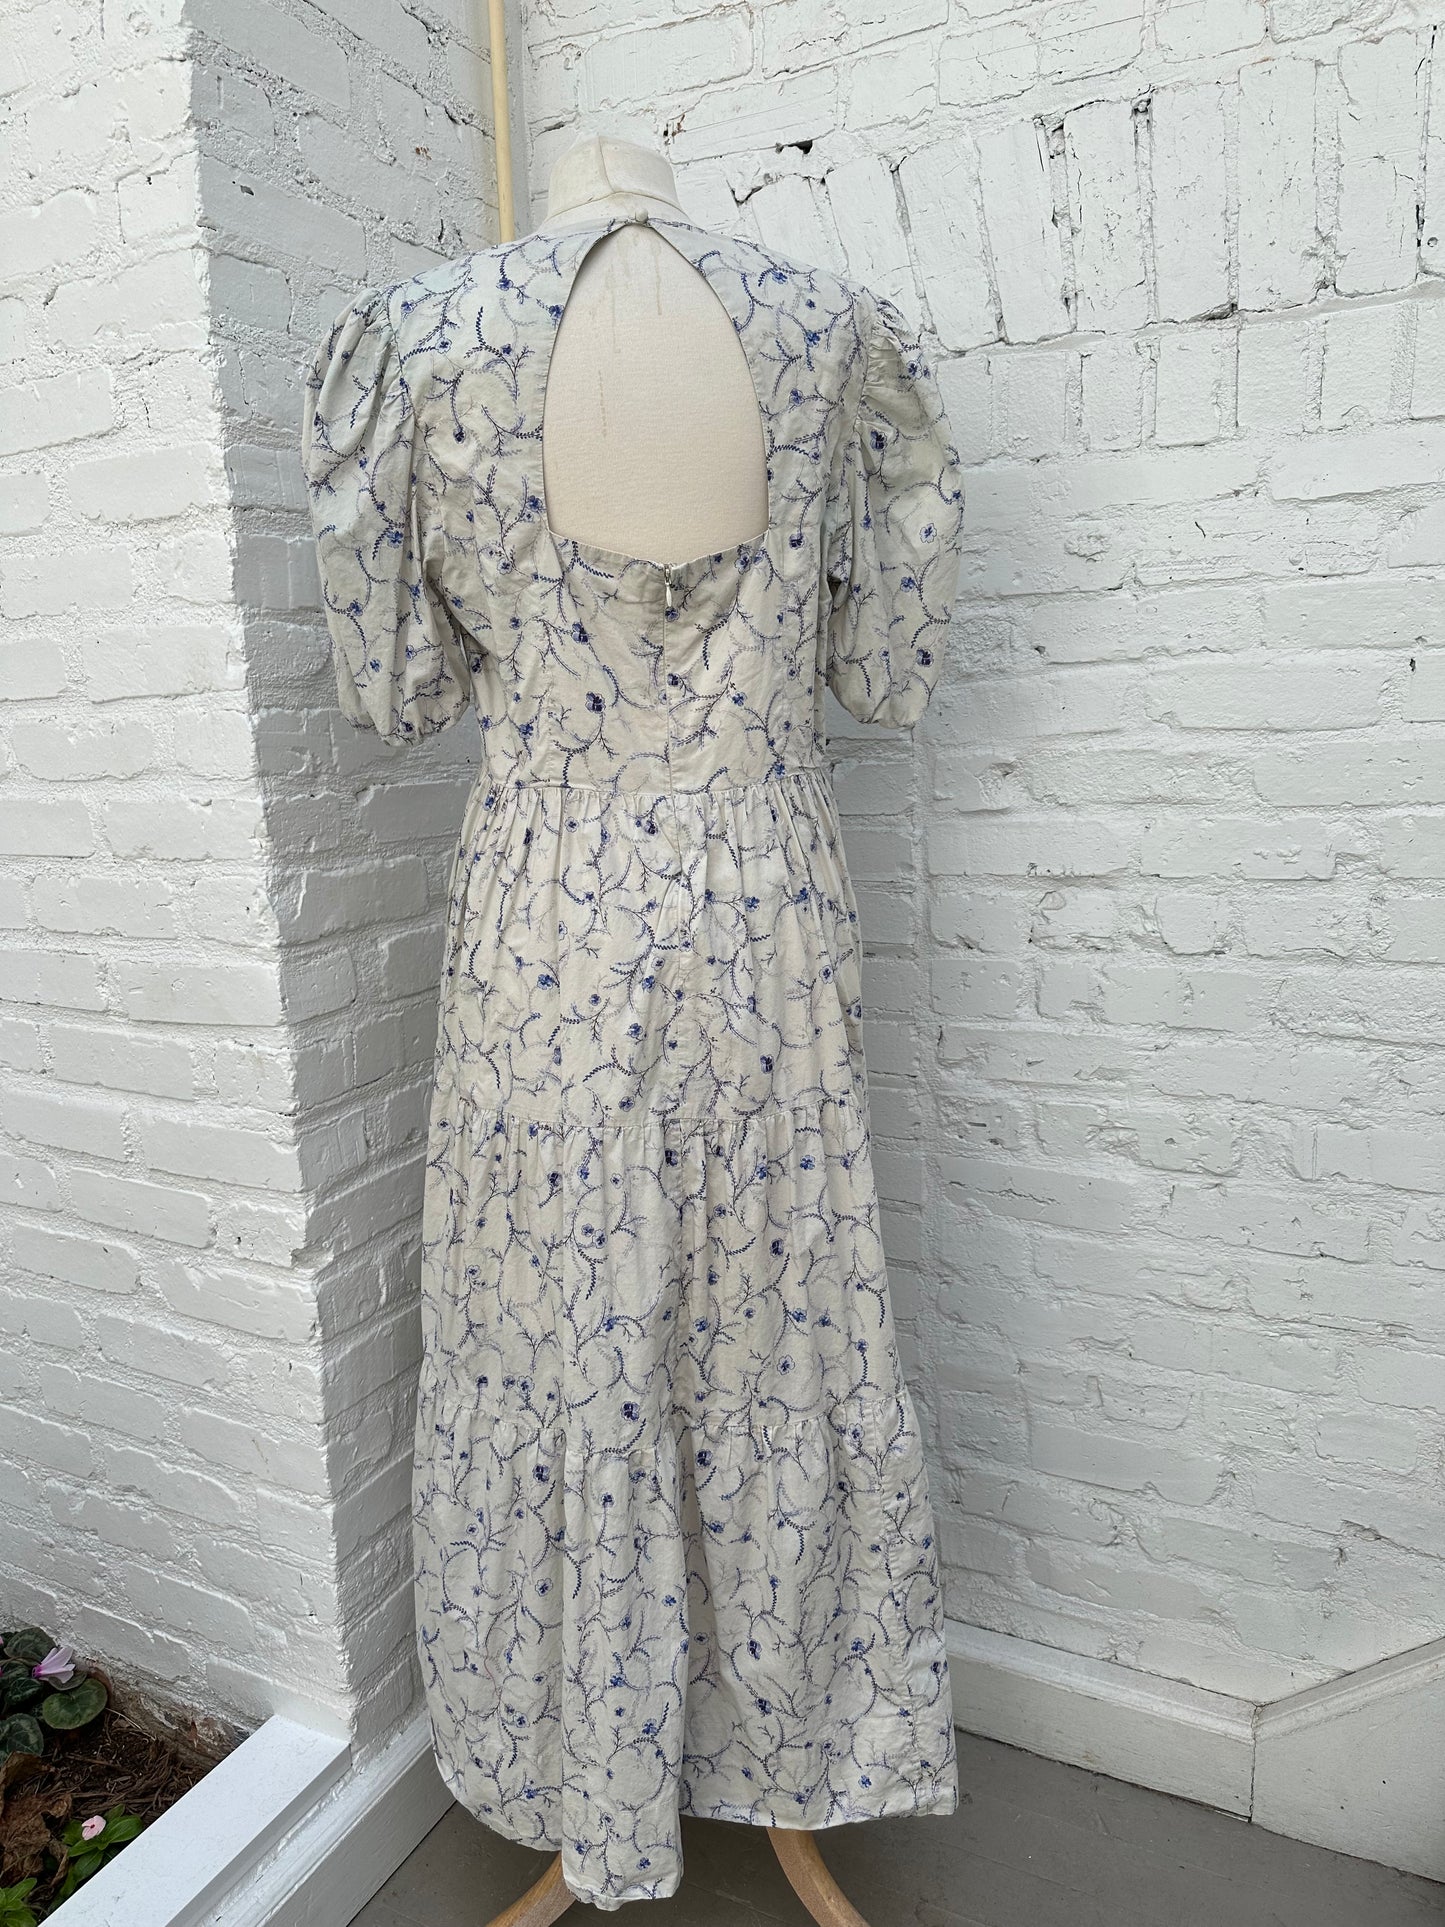 Nicholas White & Blue Floral Dress, L